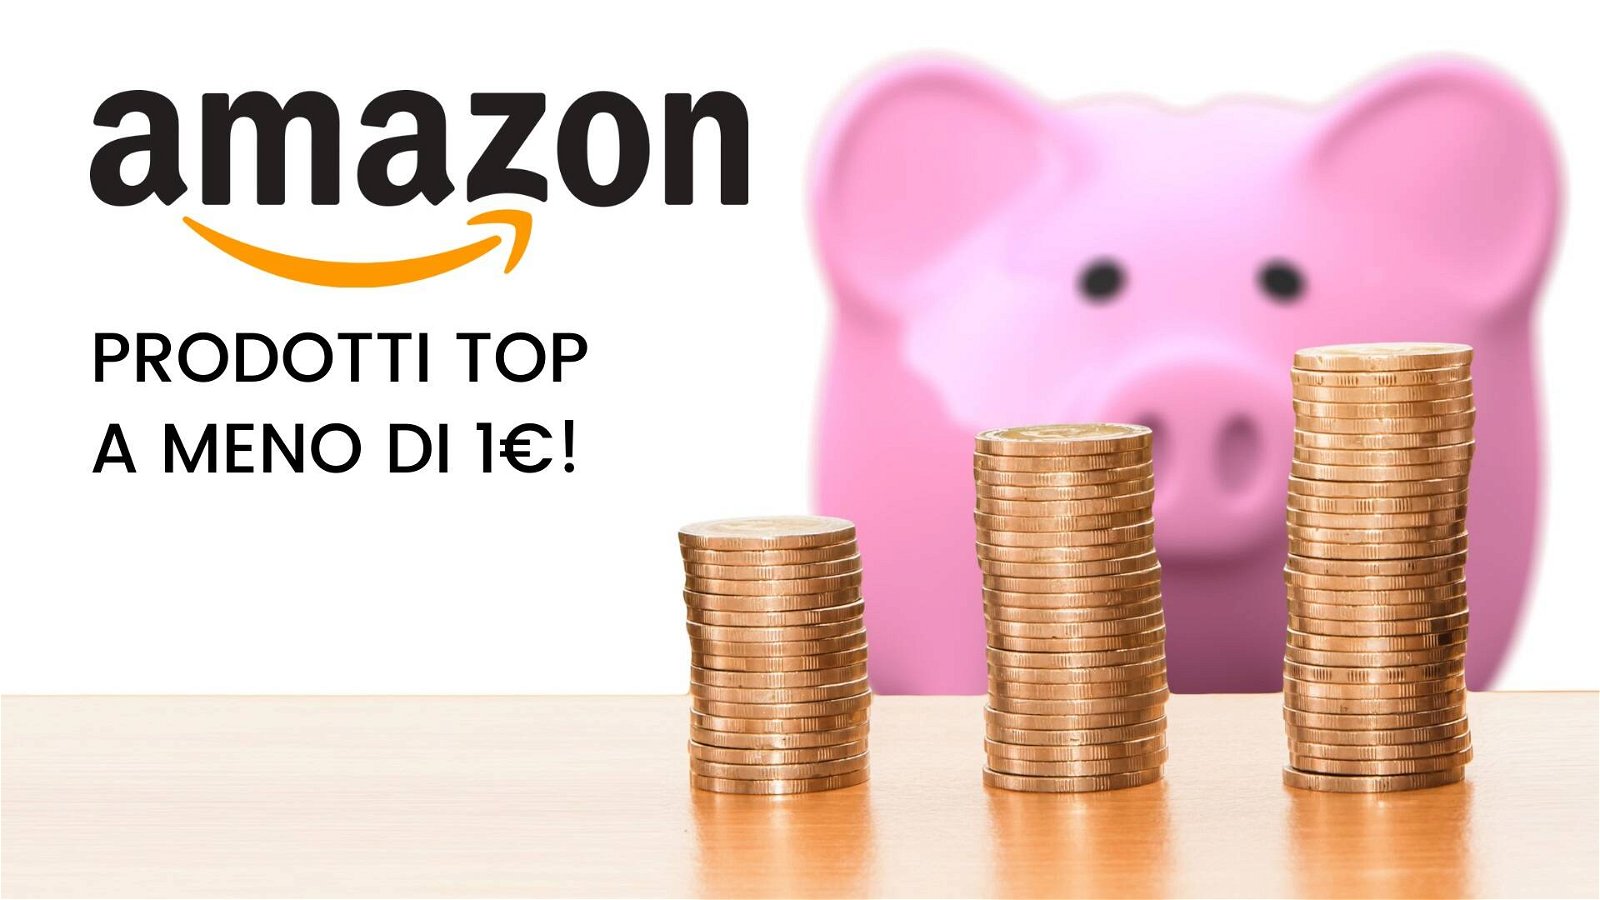 Immagine di Amazon: 10 prodotti imperdibili a meno di 1 euro!